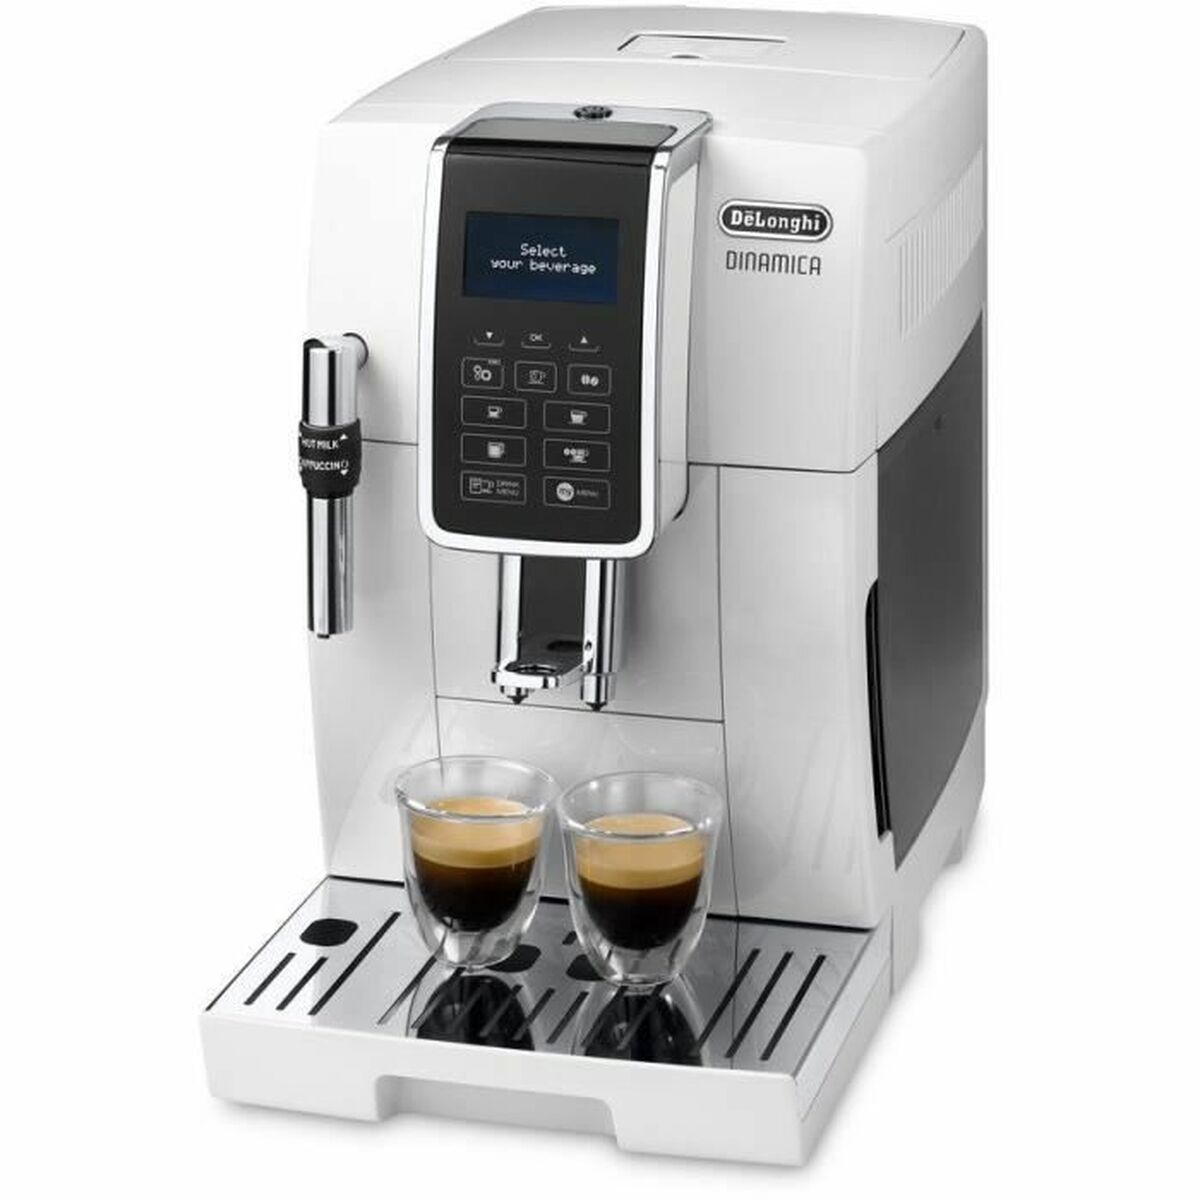 Superautomatische Kaffeemaschine DeLonghi 0132220020 Weiß 1450 W 1,8 L - CA International  